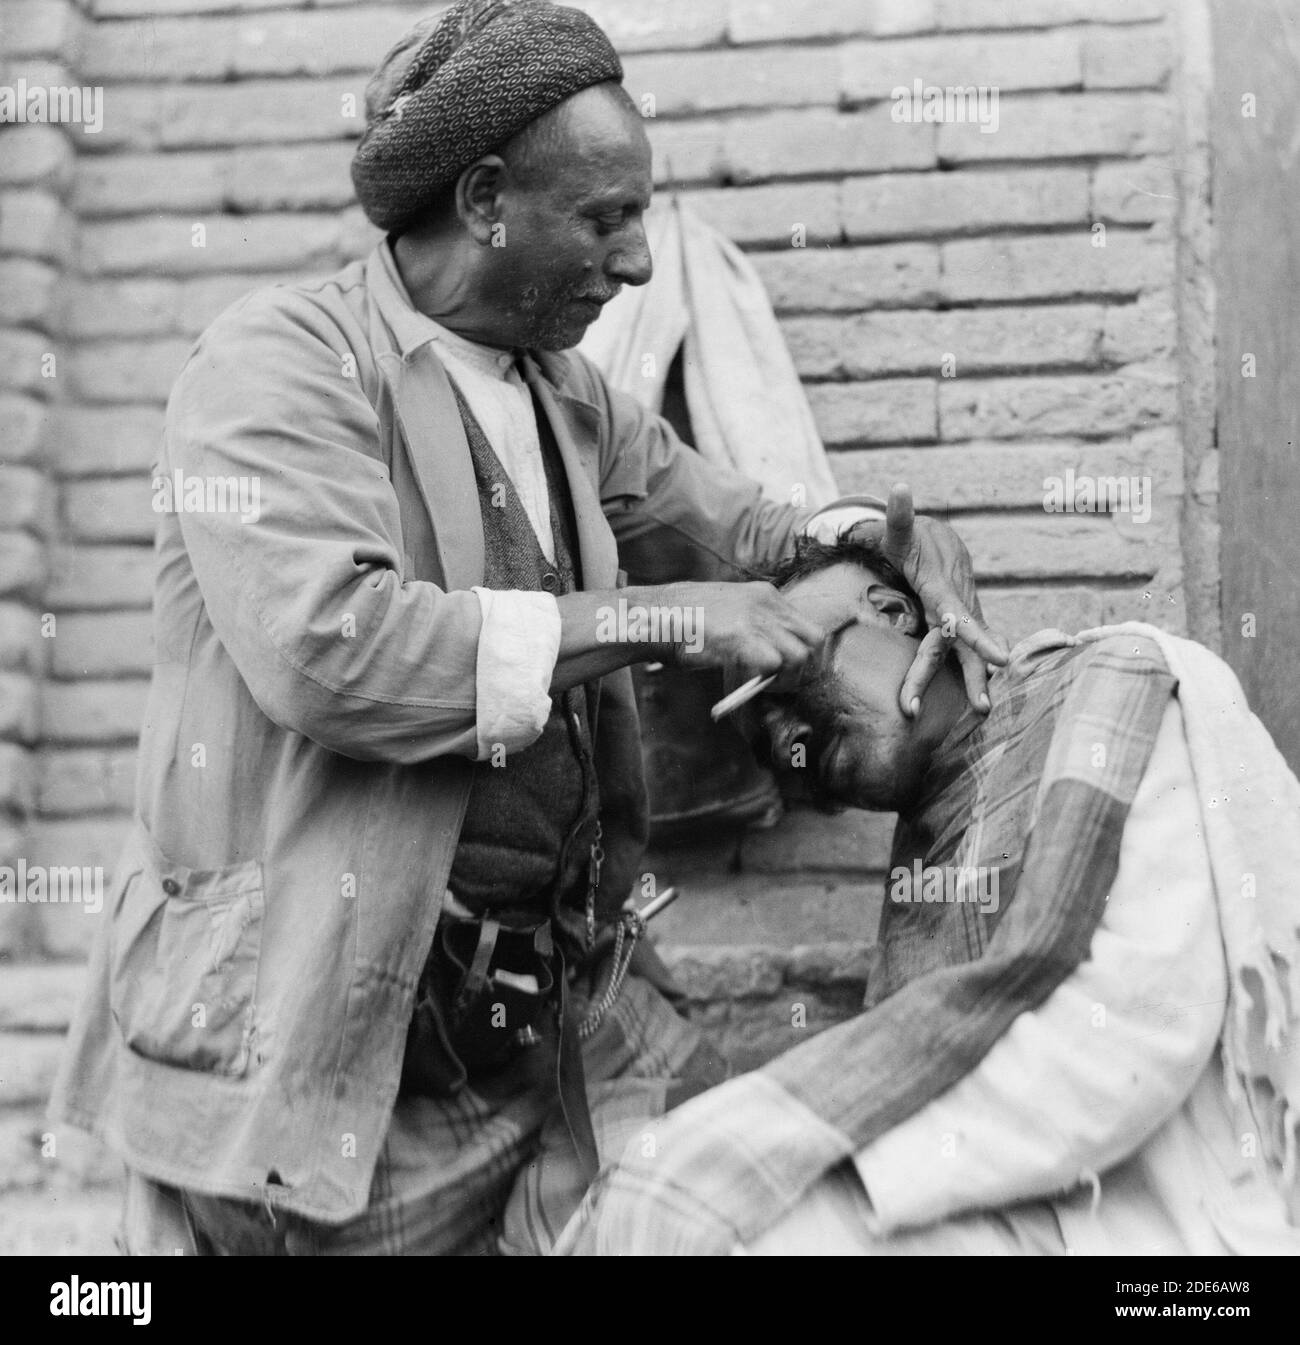 Originalunterschrift: Irak. (Mesopotamien). Bagdad. Ansicht von Straßenszenen und Typen. Straßenbarbier bei der Arbeit - Ort: Irak--Bagdad ca. 1932 Stockfoto